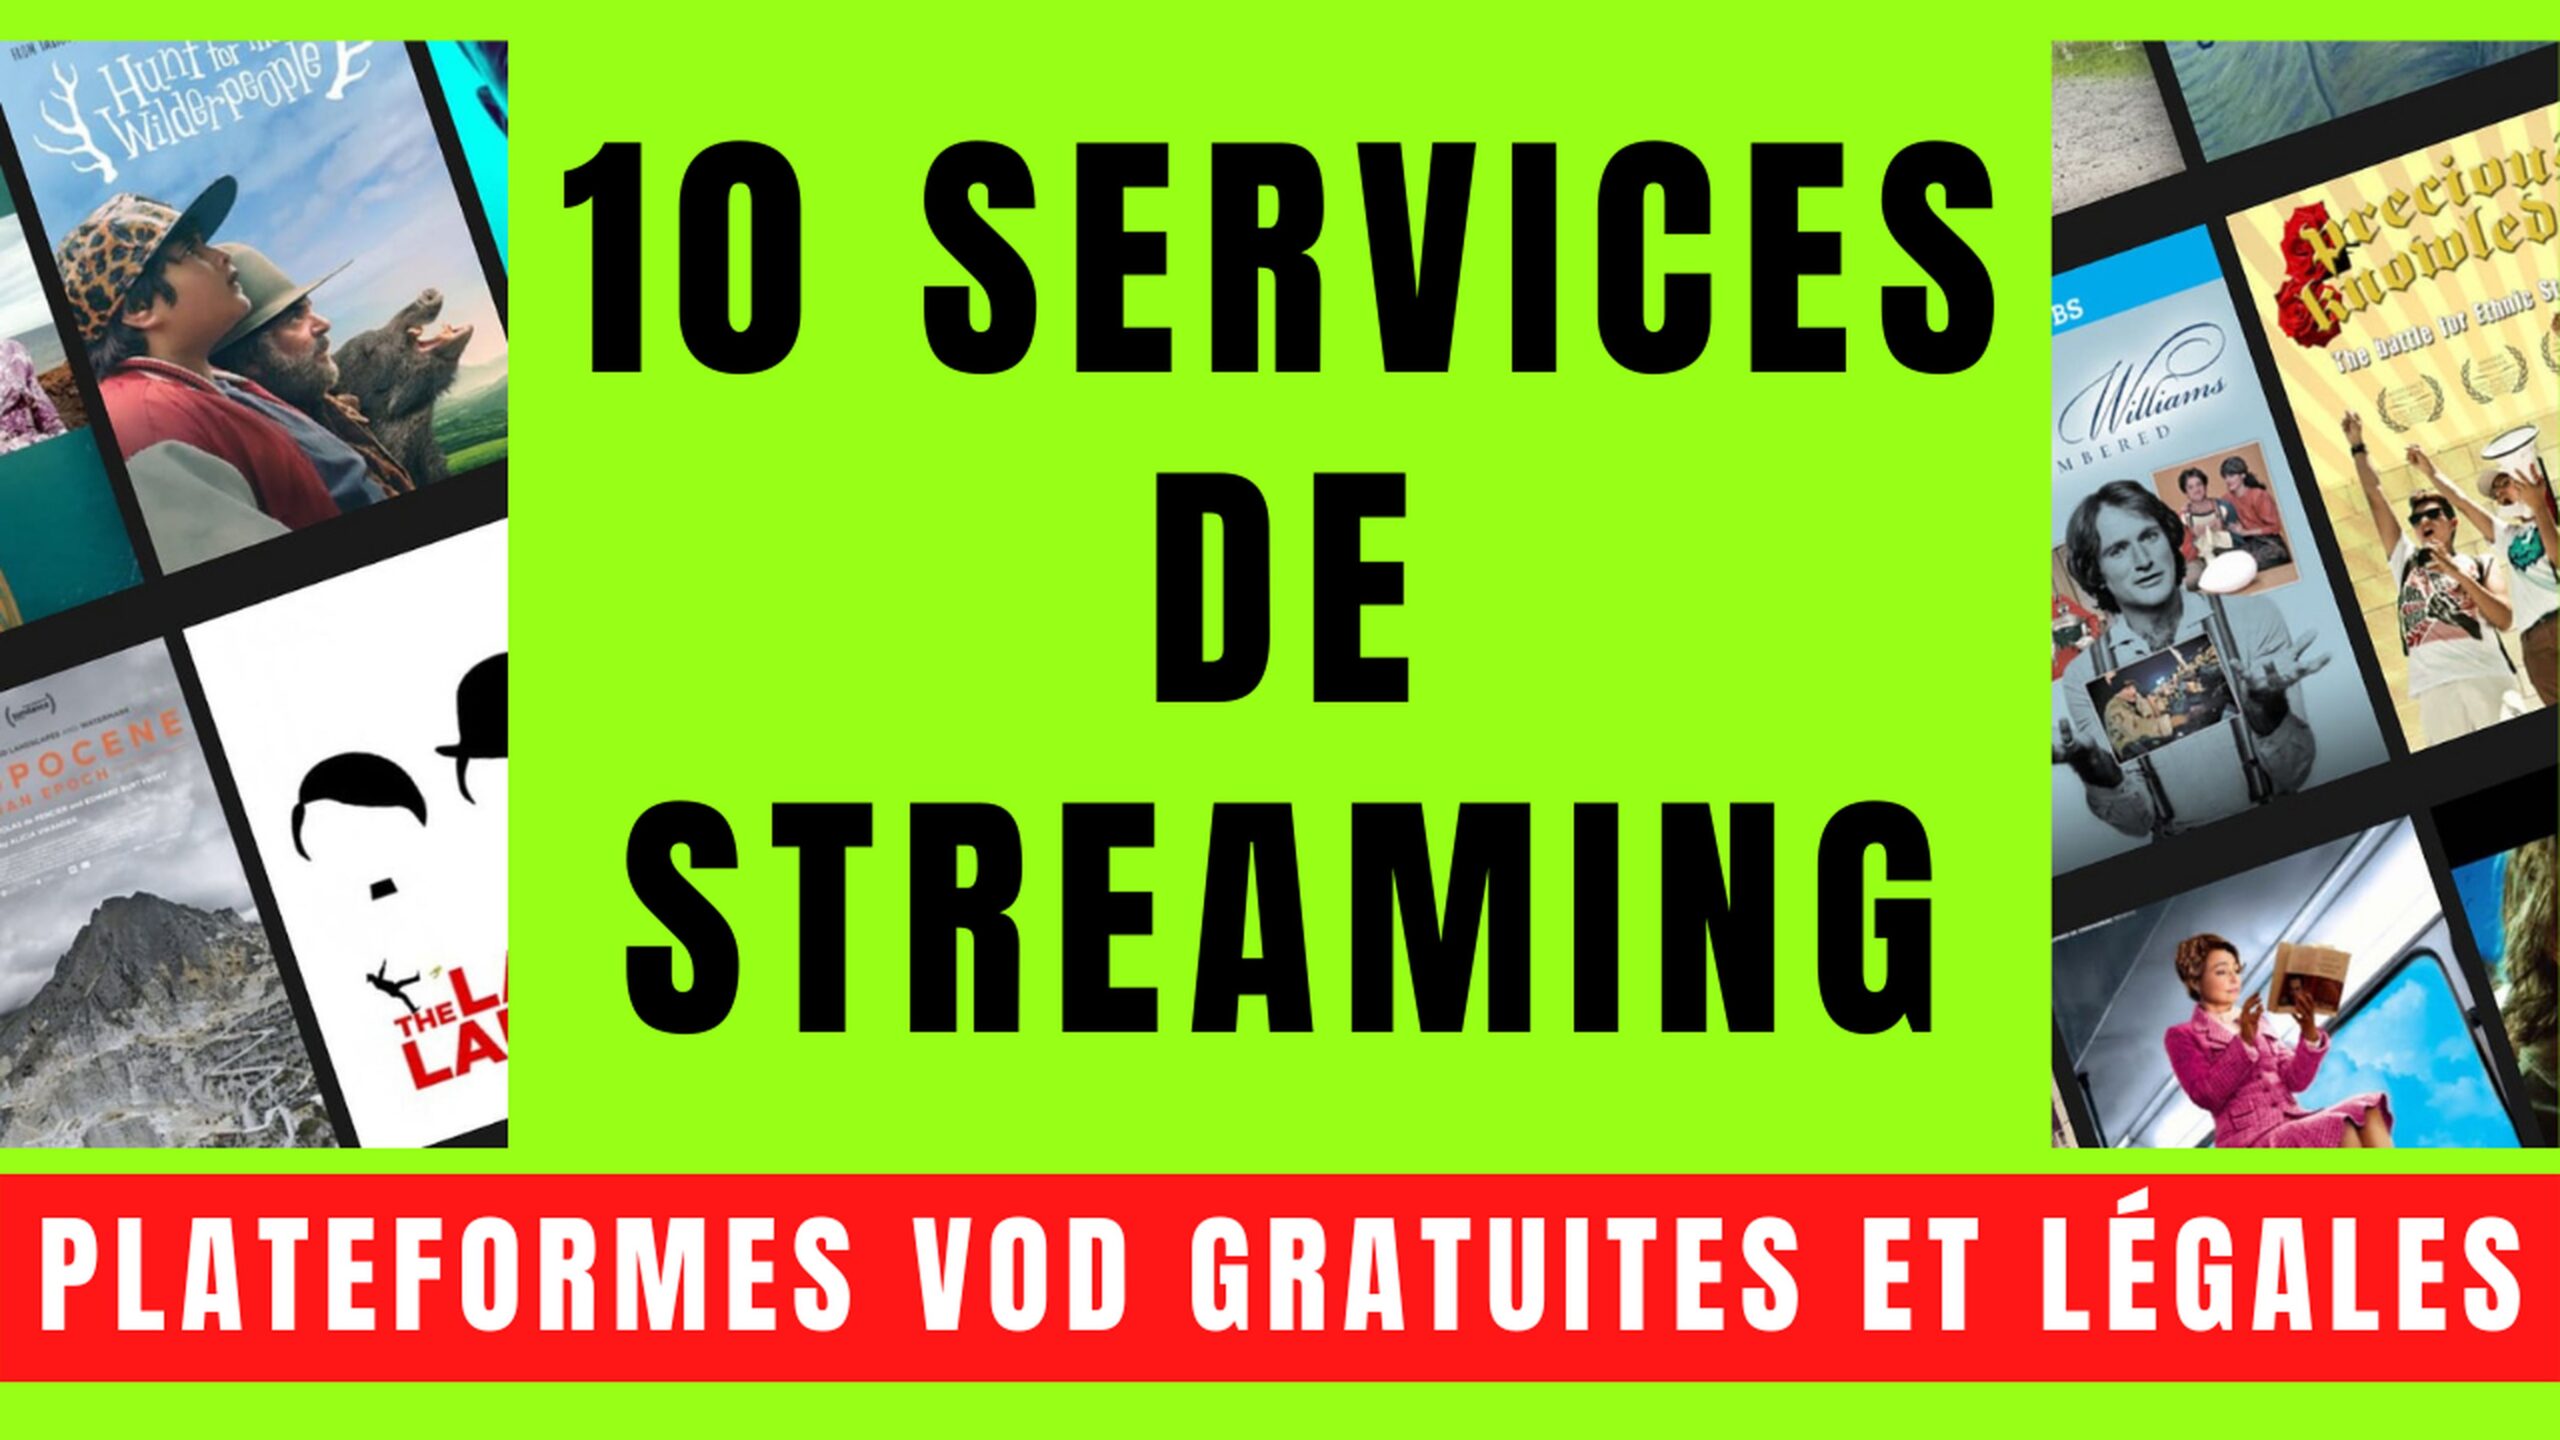 10 SERVICES VOD avec STREAMING GRATUIT et LÉGAL 12